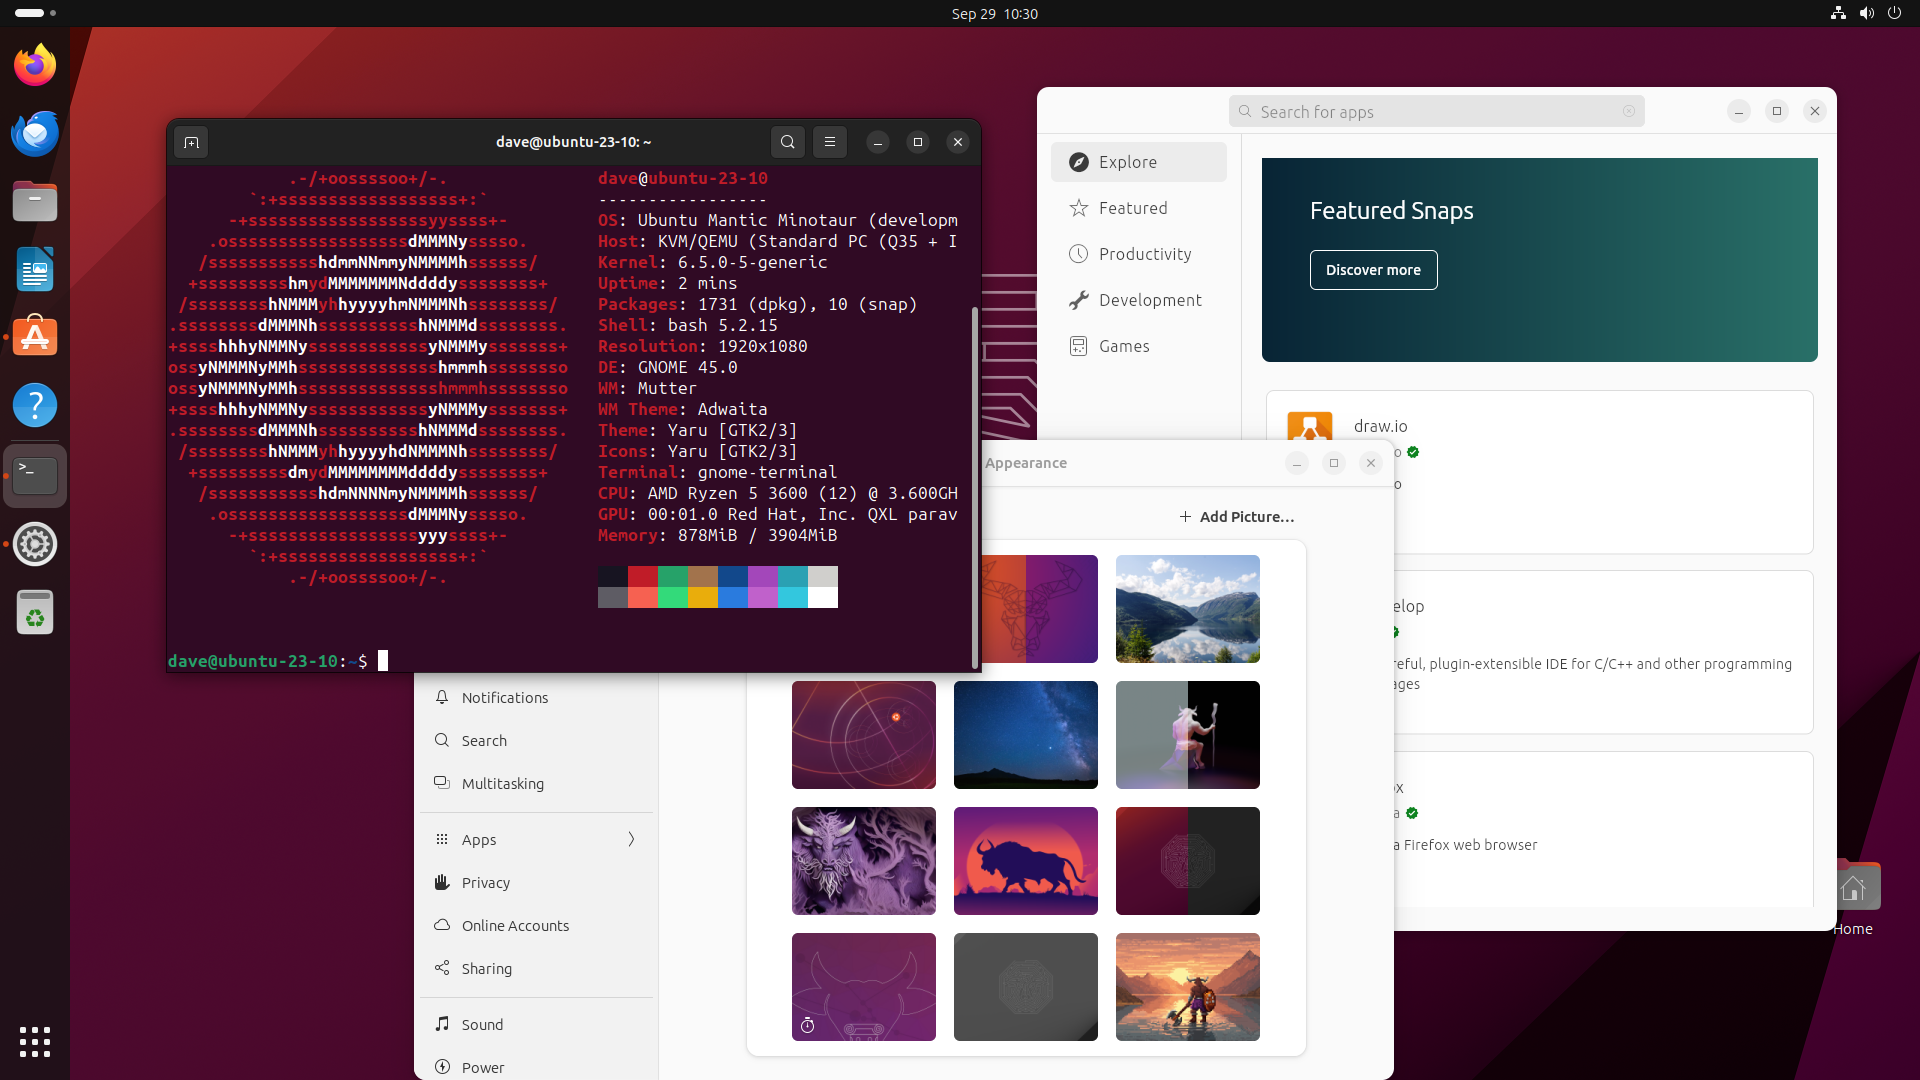 The Ubuntu 23.10 Mantic Minotaur GNOME desktop